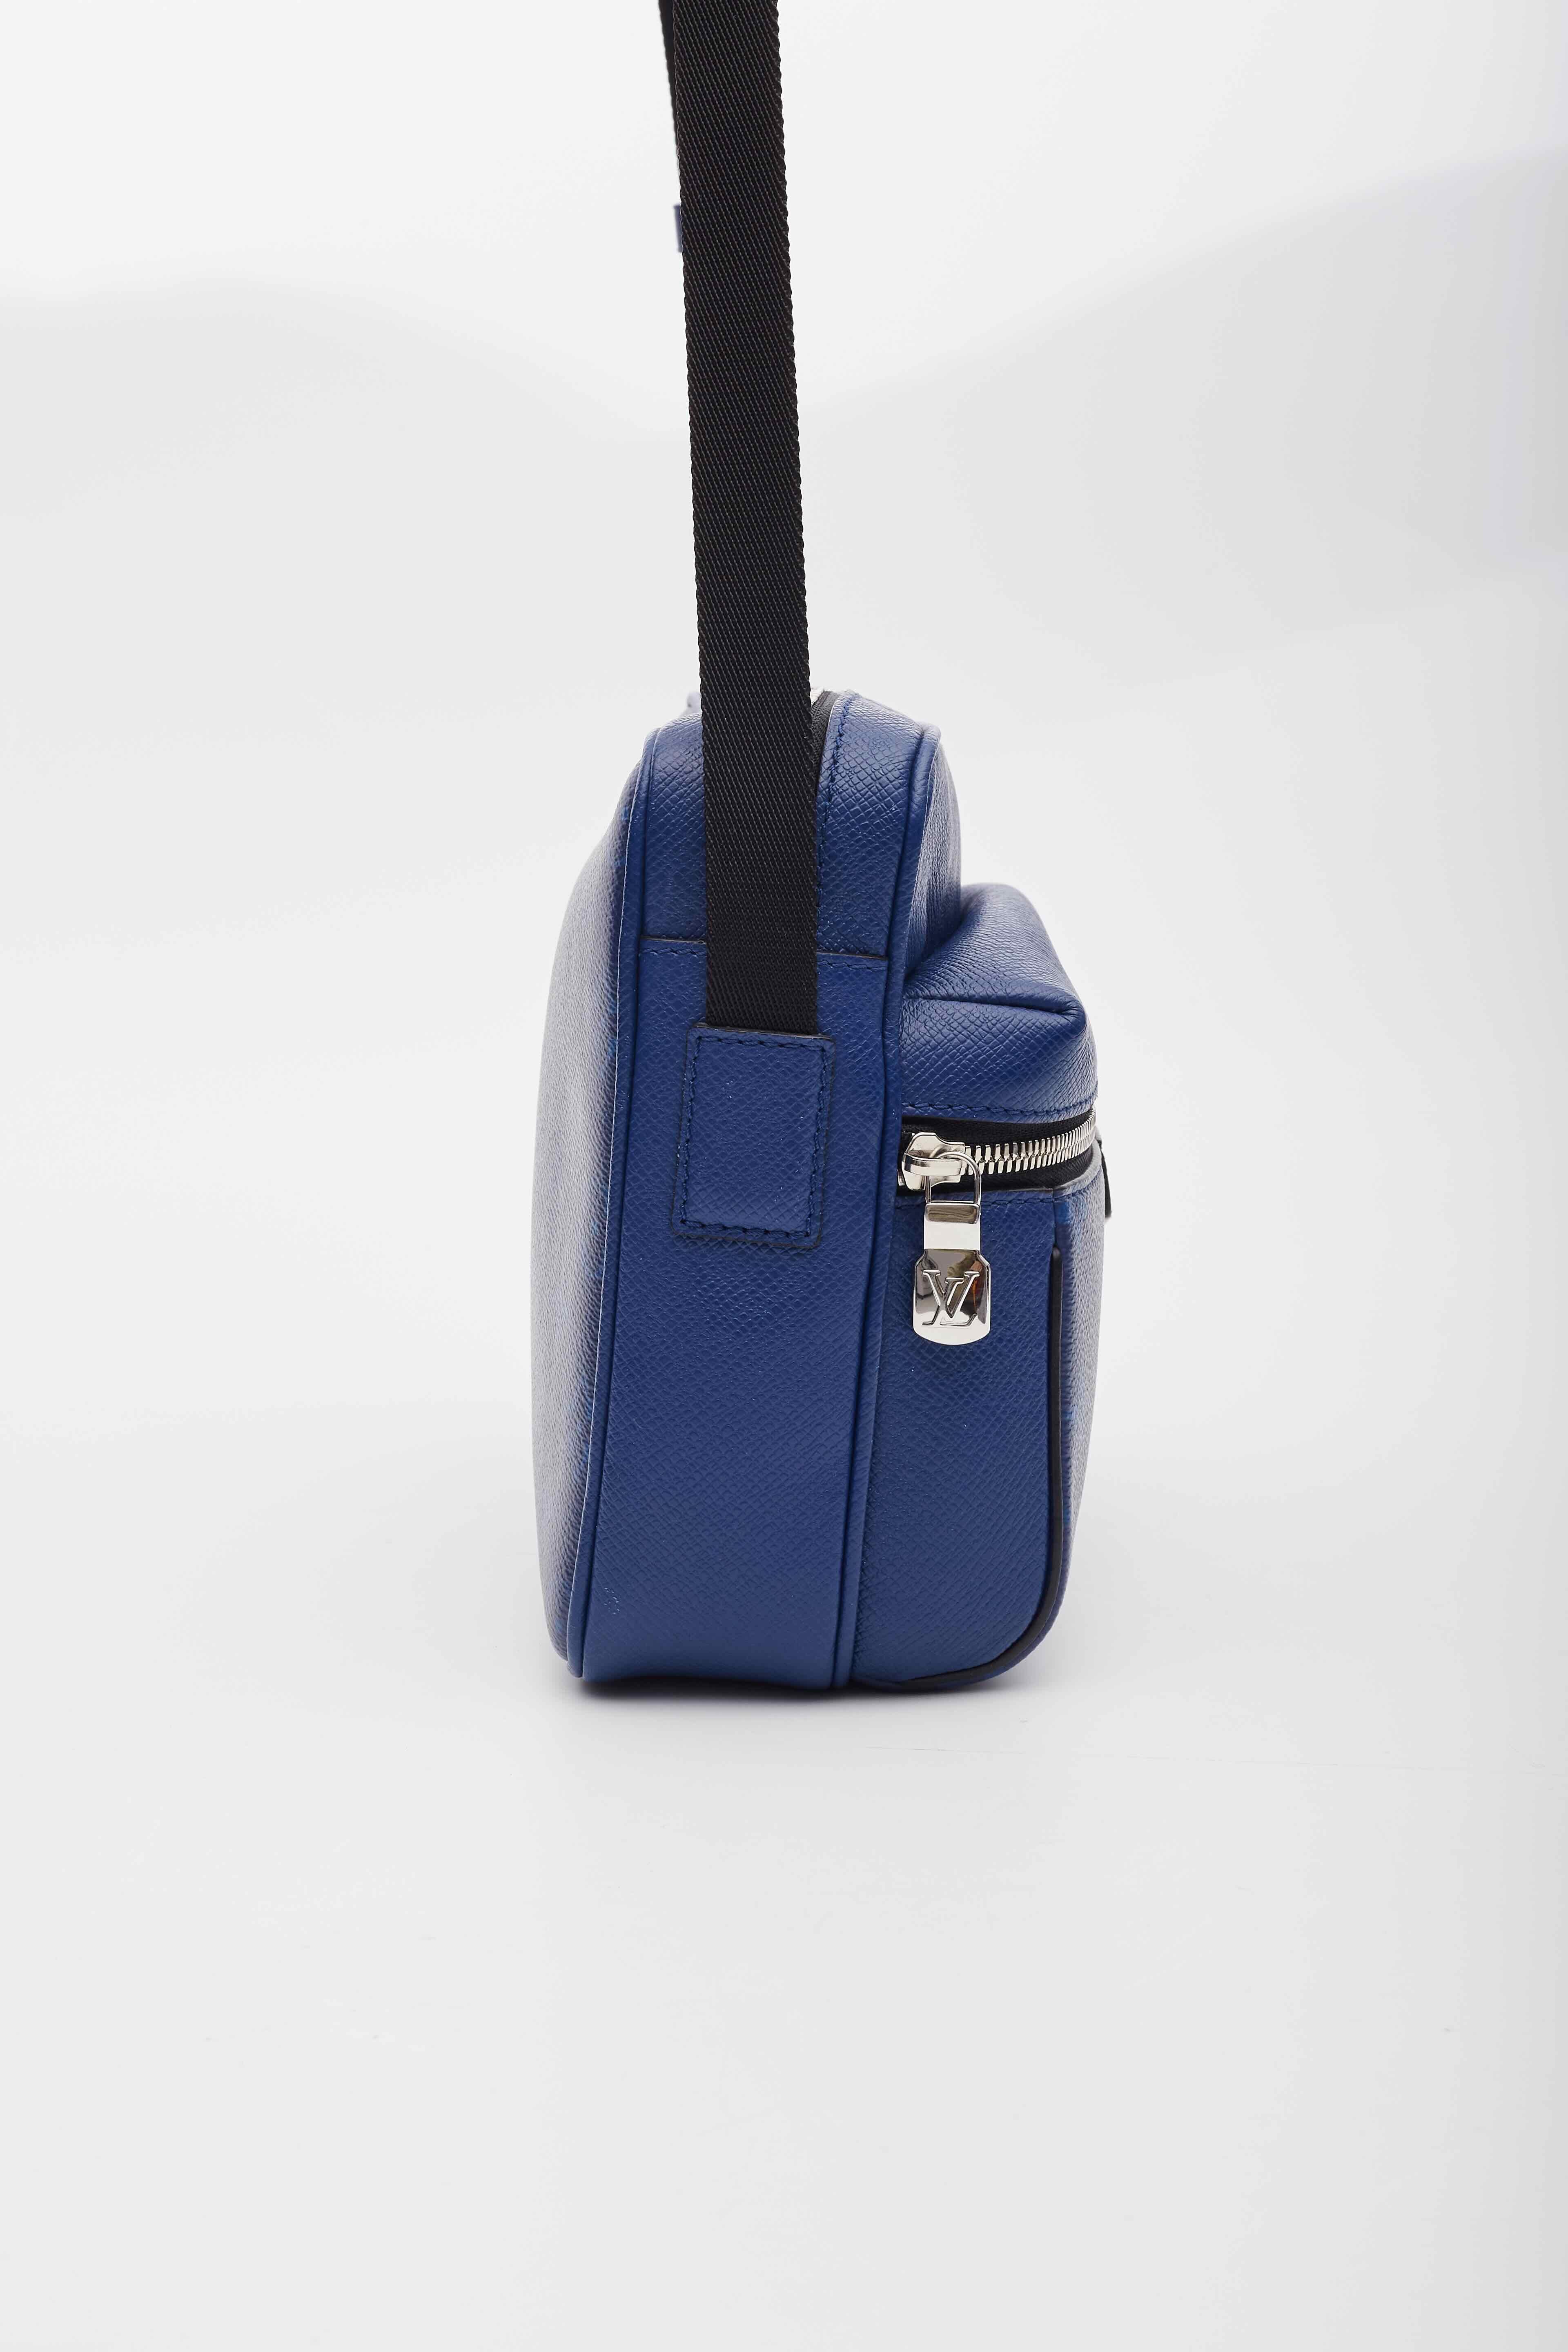 Women's Louis Vuitton Taiga Monogram Cobalt Blue Outdoor Messenger Bag